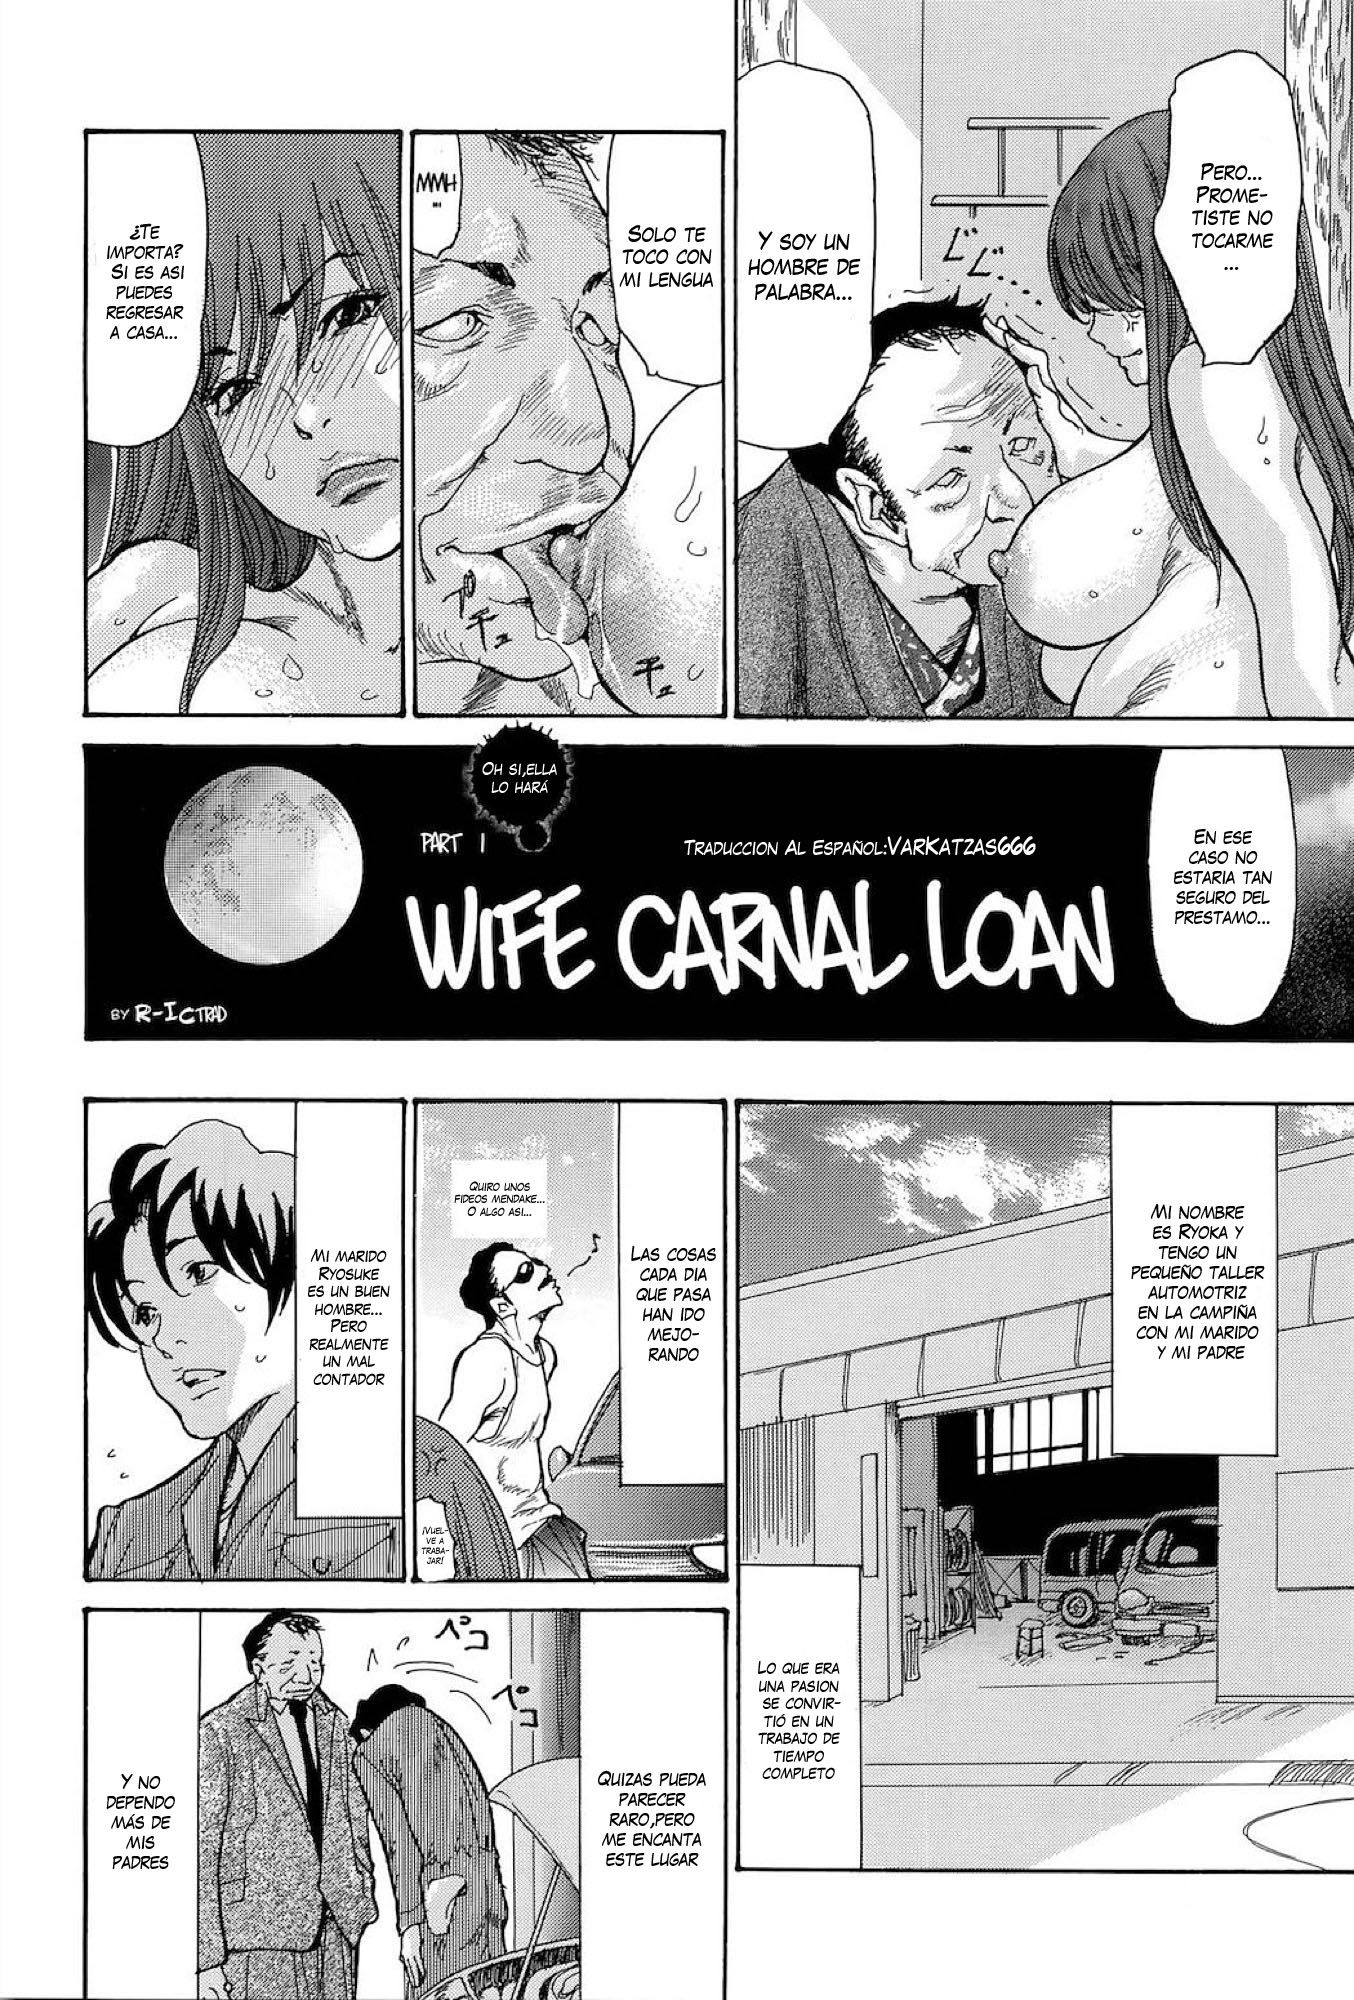 Wife Carnal Loan Pt1 (Sin Censura) - 1